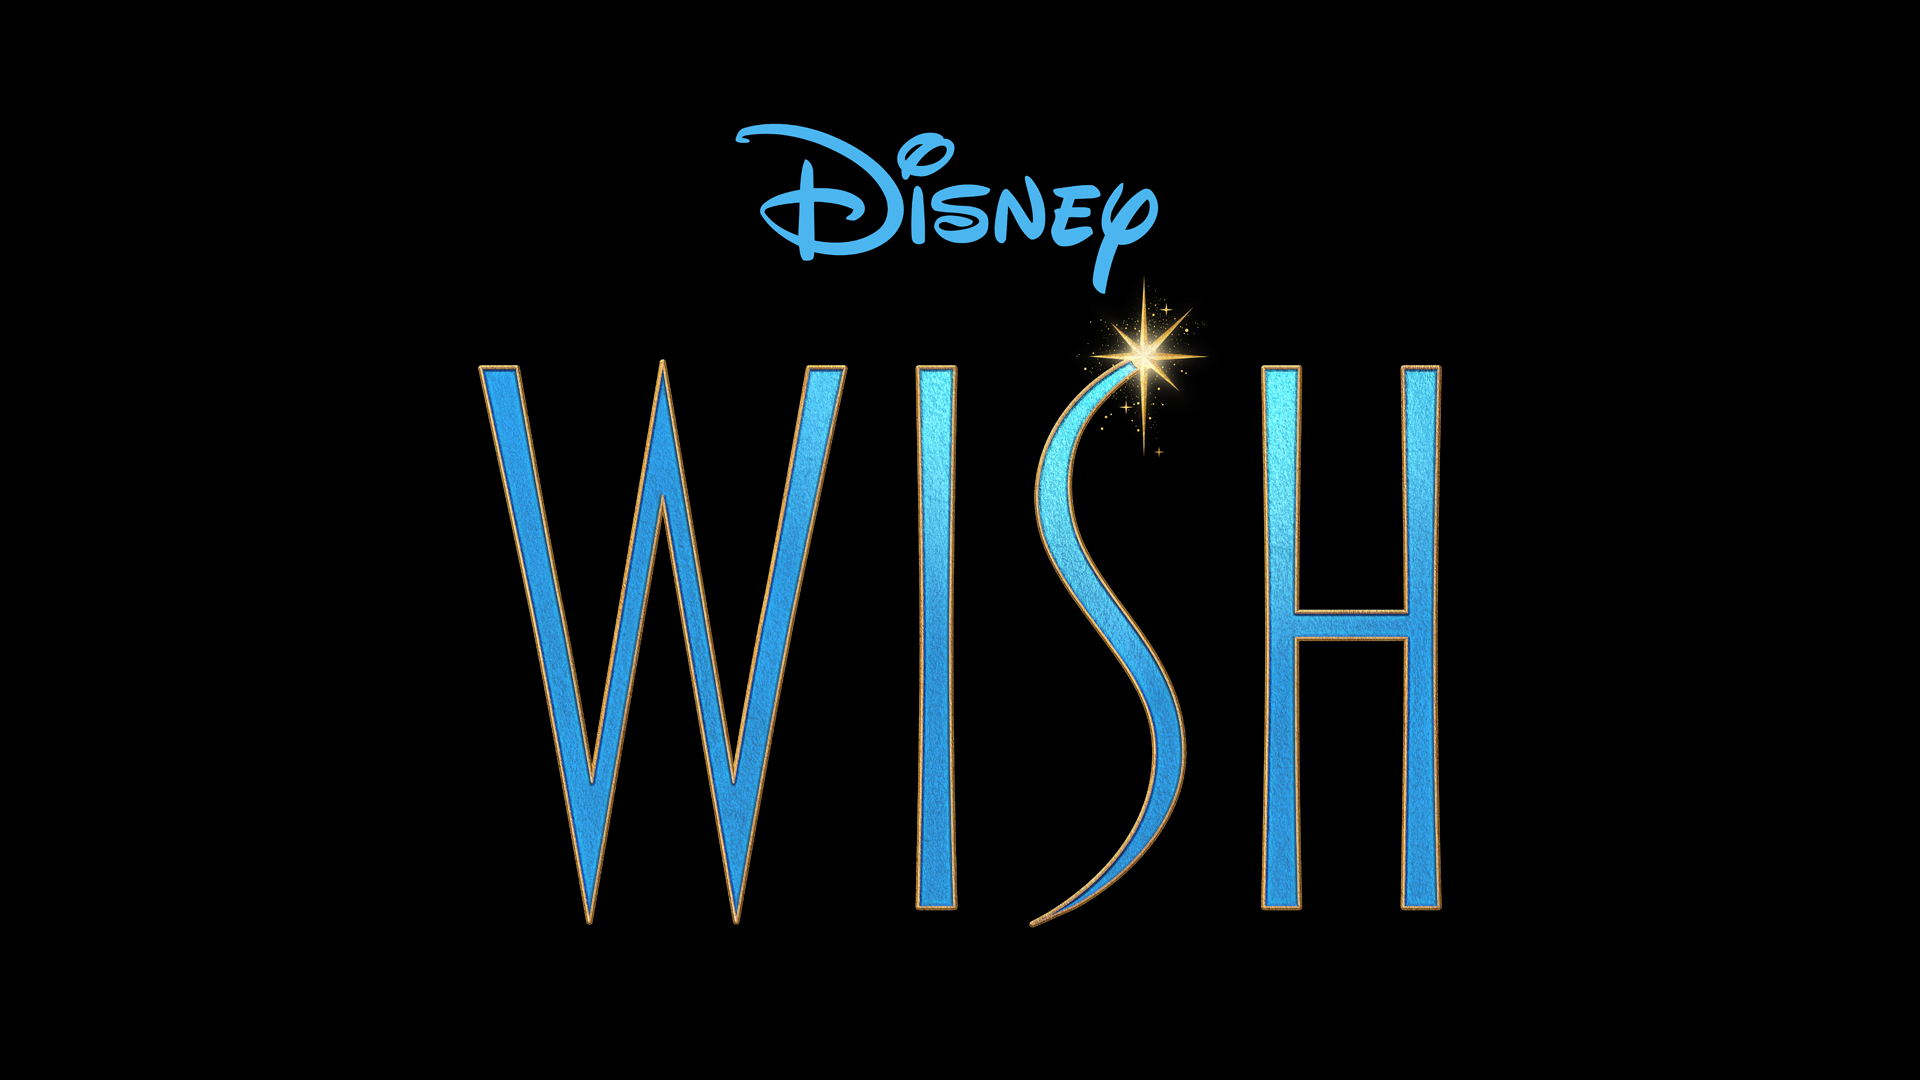 WISH courtesy of Disney Animation